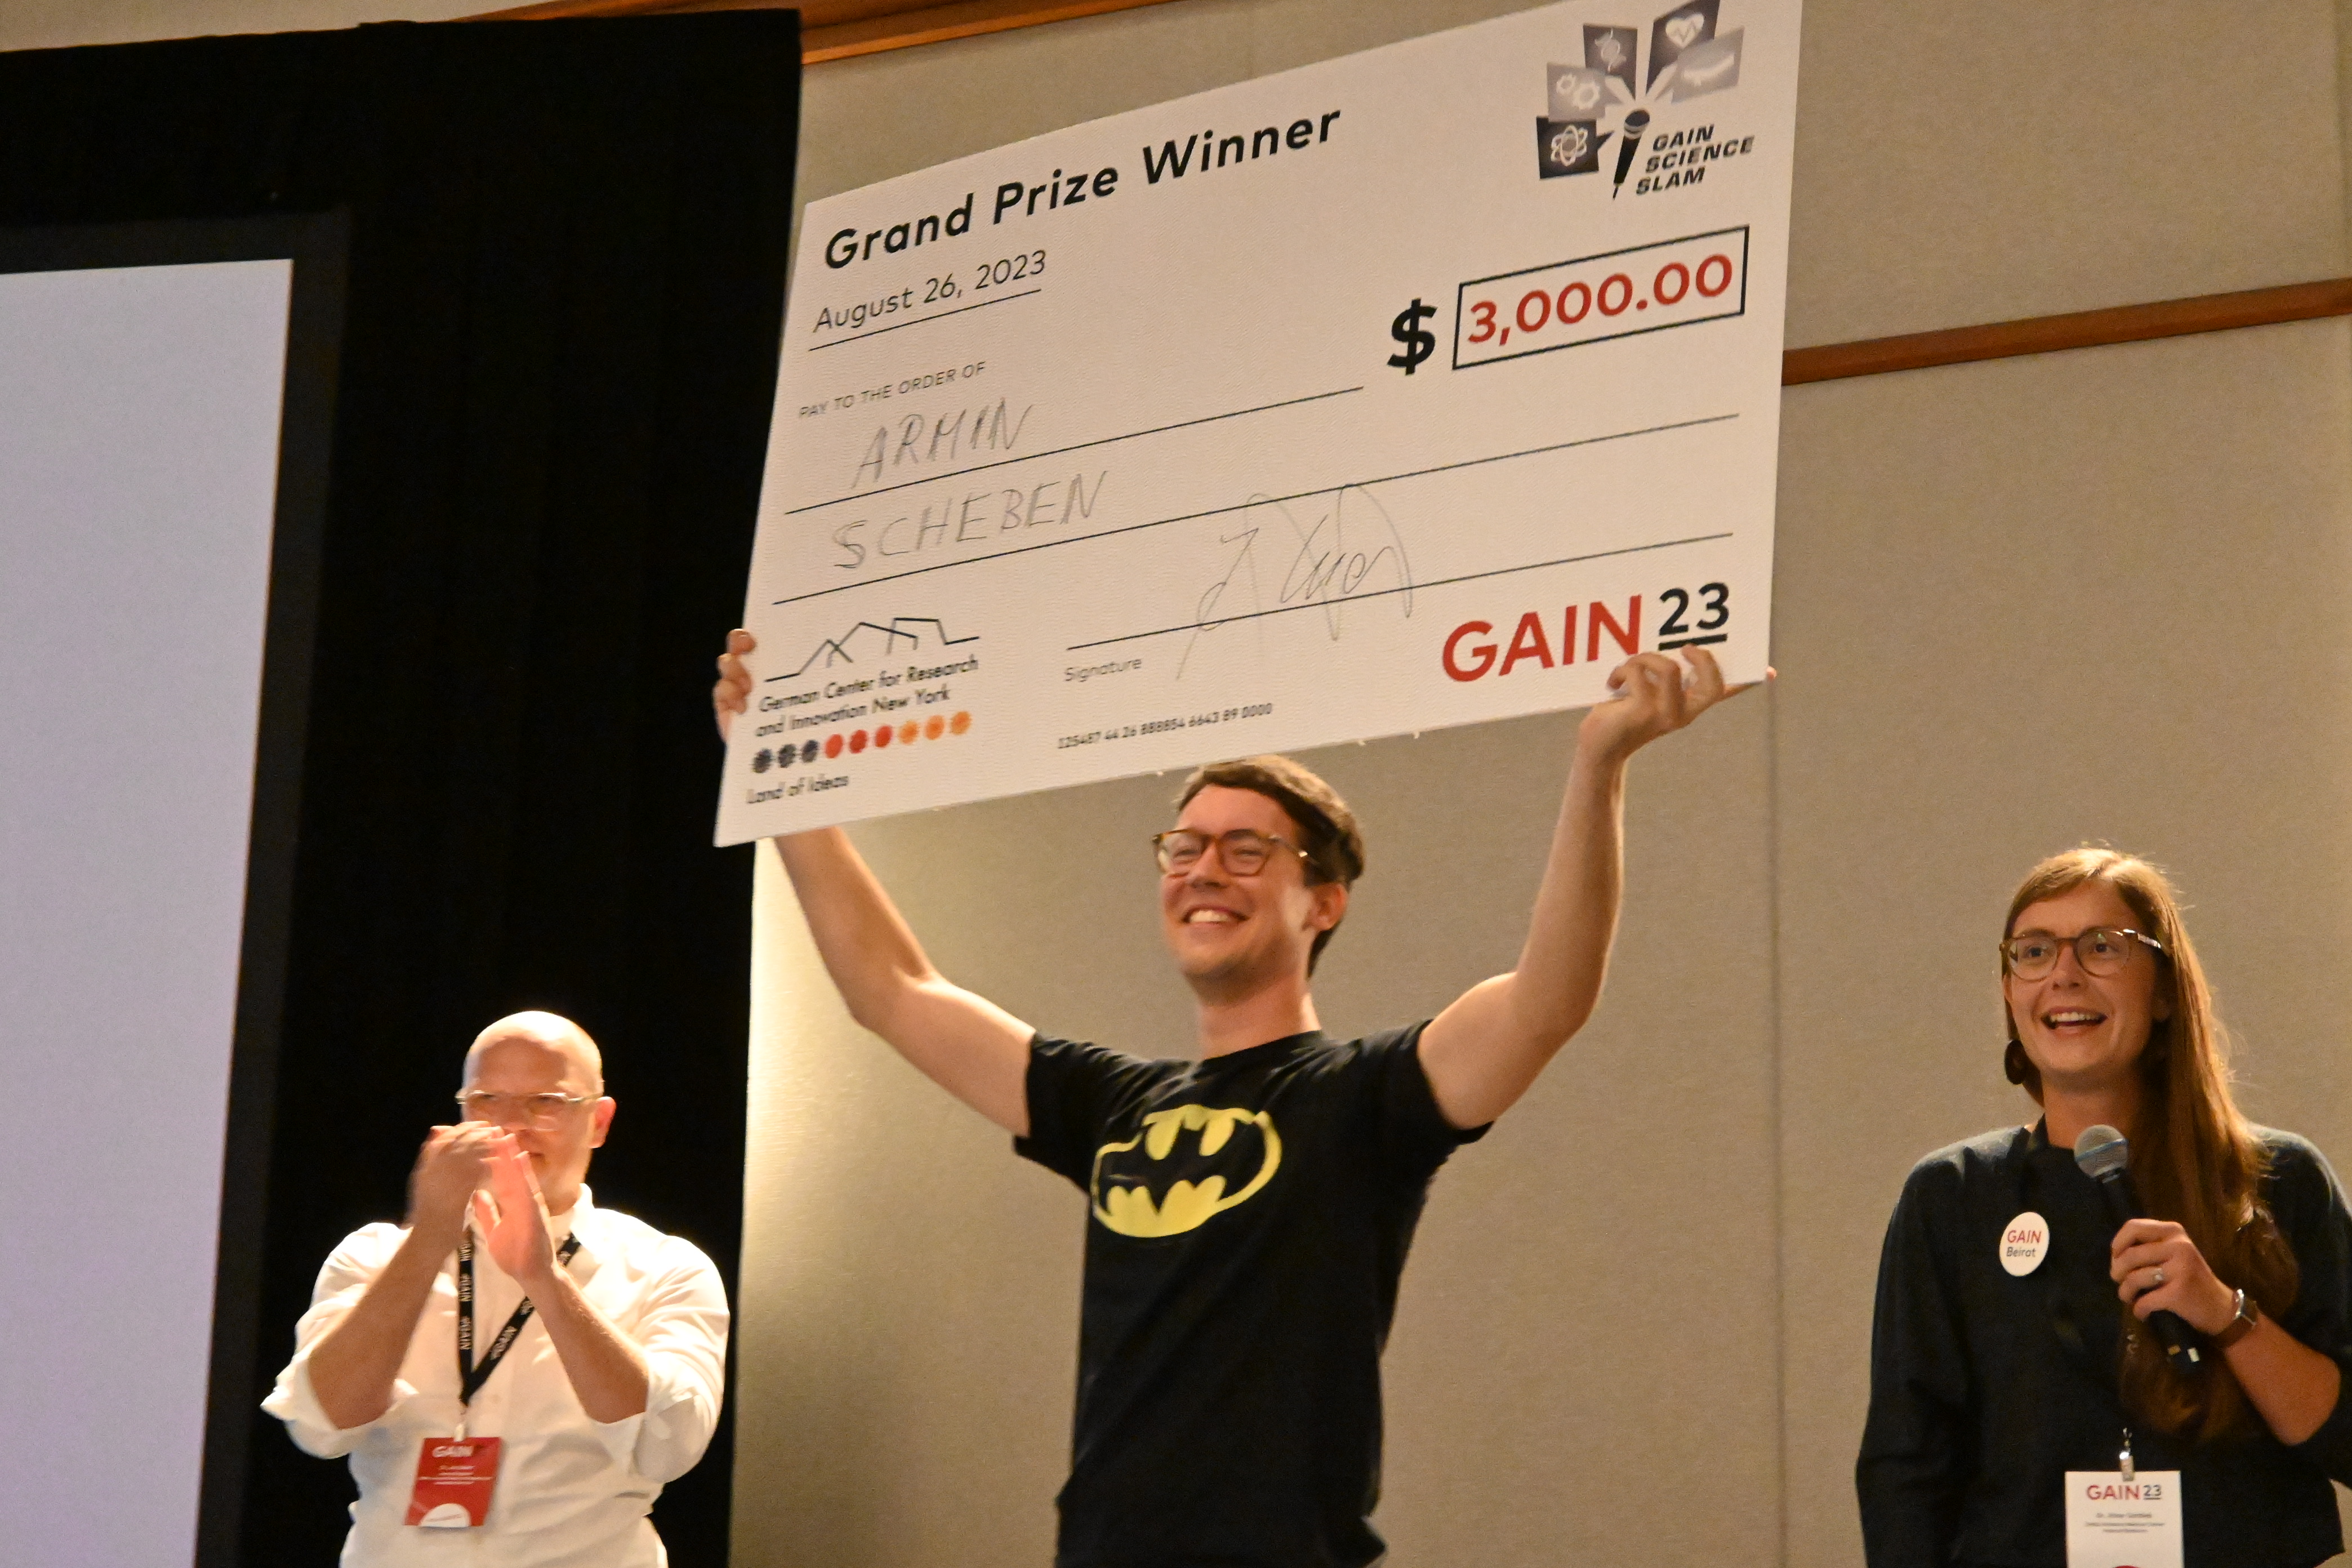 Große Freude beim Gewinner des diesjährigen Science Slams: Armin Scheben präsentiert den Scheck für das Preisgeld von 3000 Dollar.